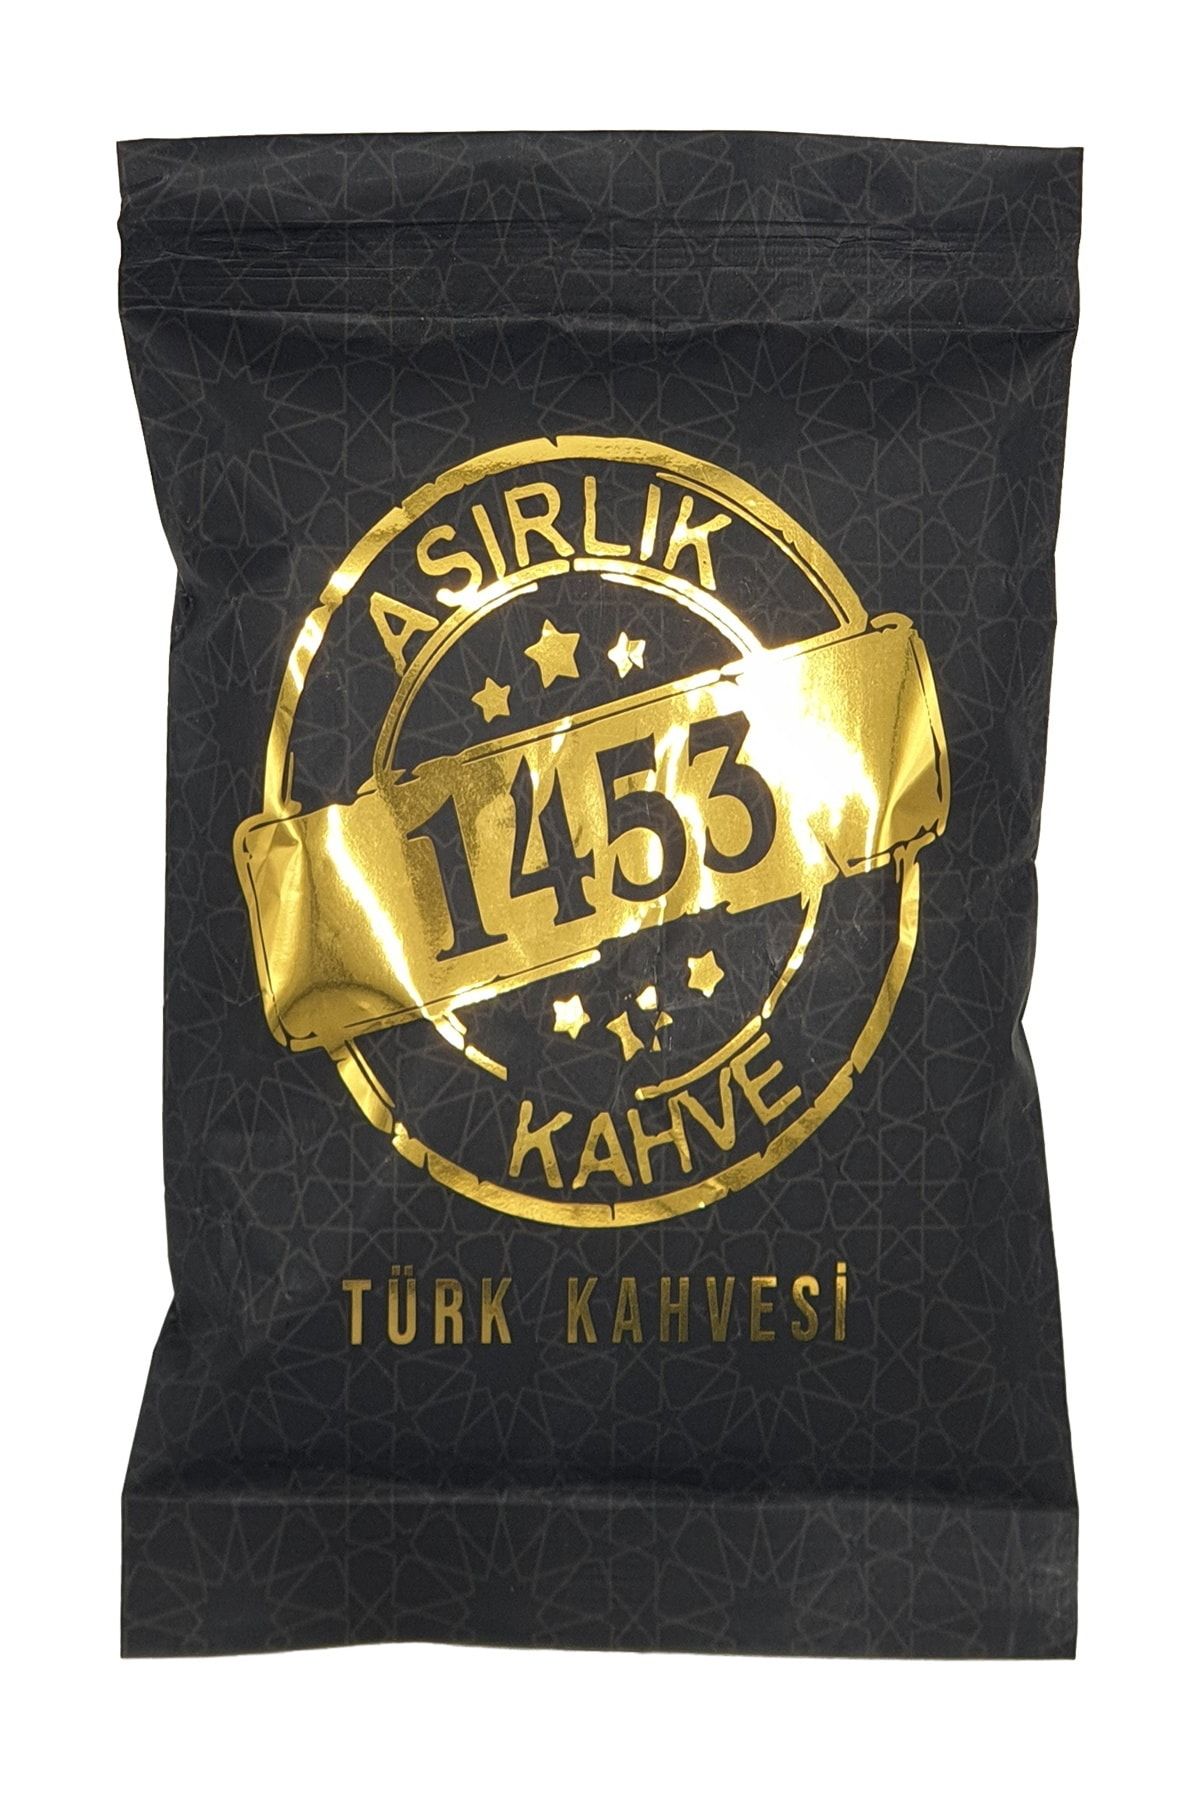 ASIRLIK 1453 KAHVE Asırlık 1453 Türk Kahvesi ( 100 Gr )